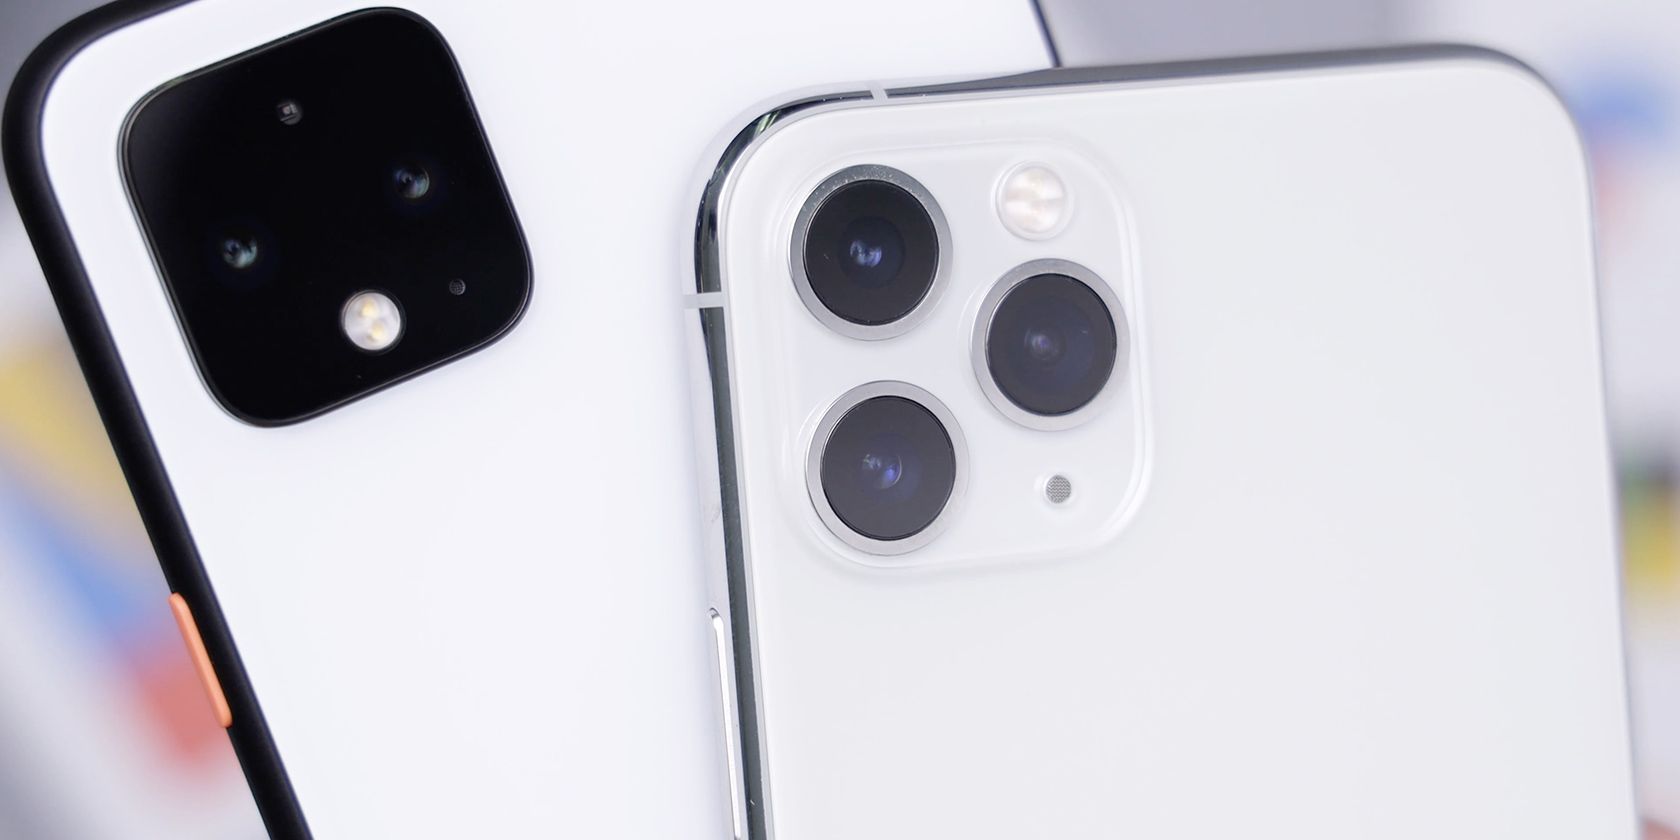 Neuer Bericht behauptet, iPhones behalten ihren Wert besser als Androiden - android iphone side by side